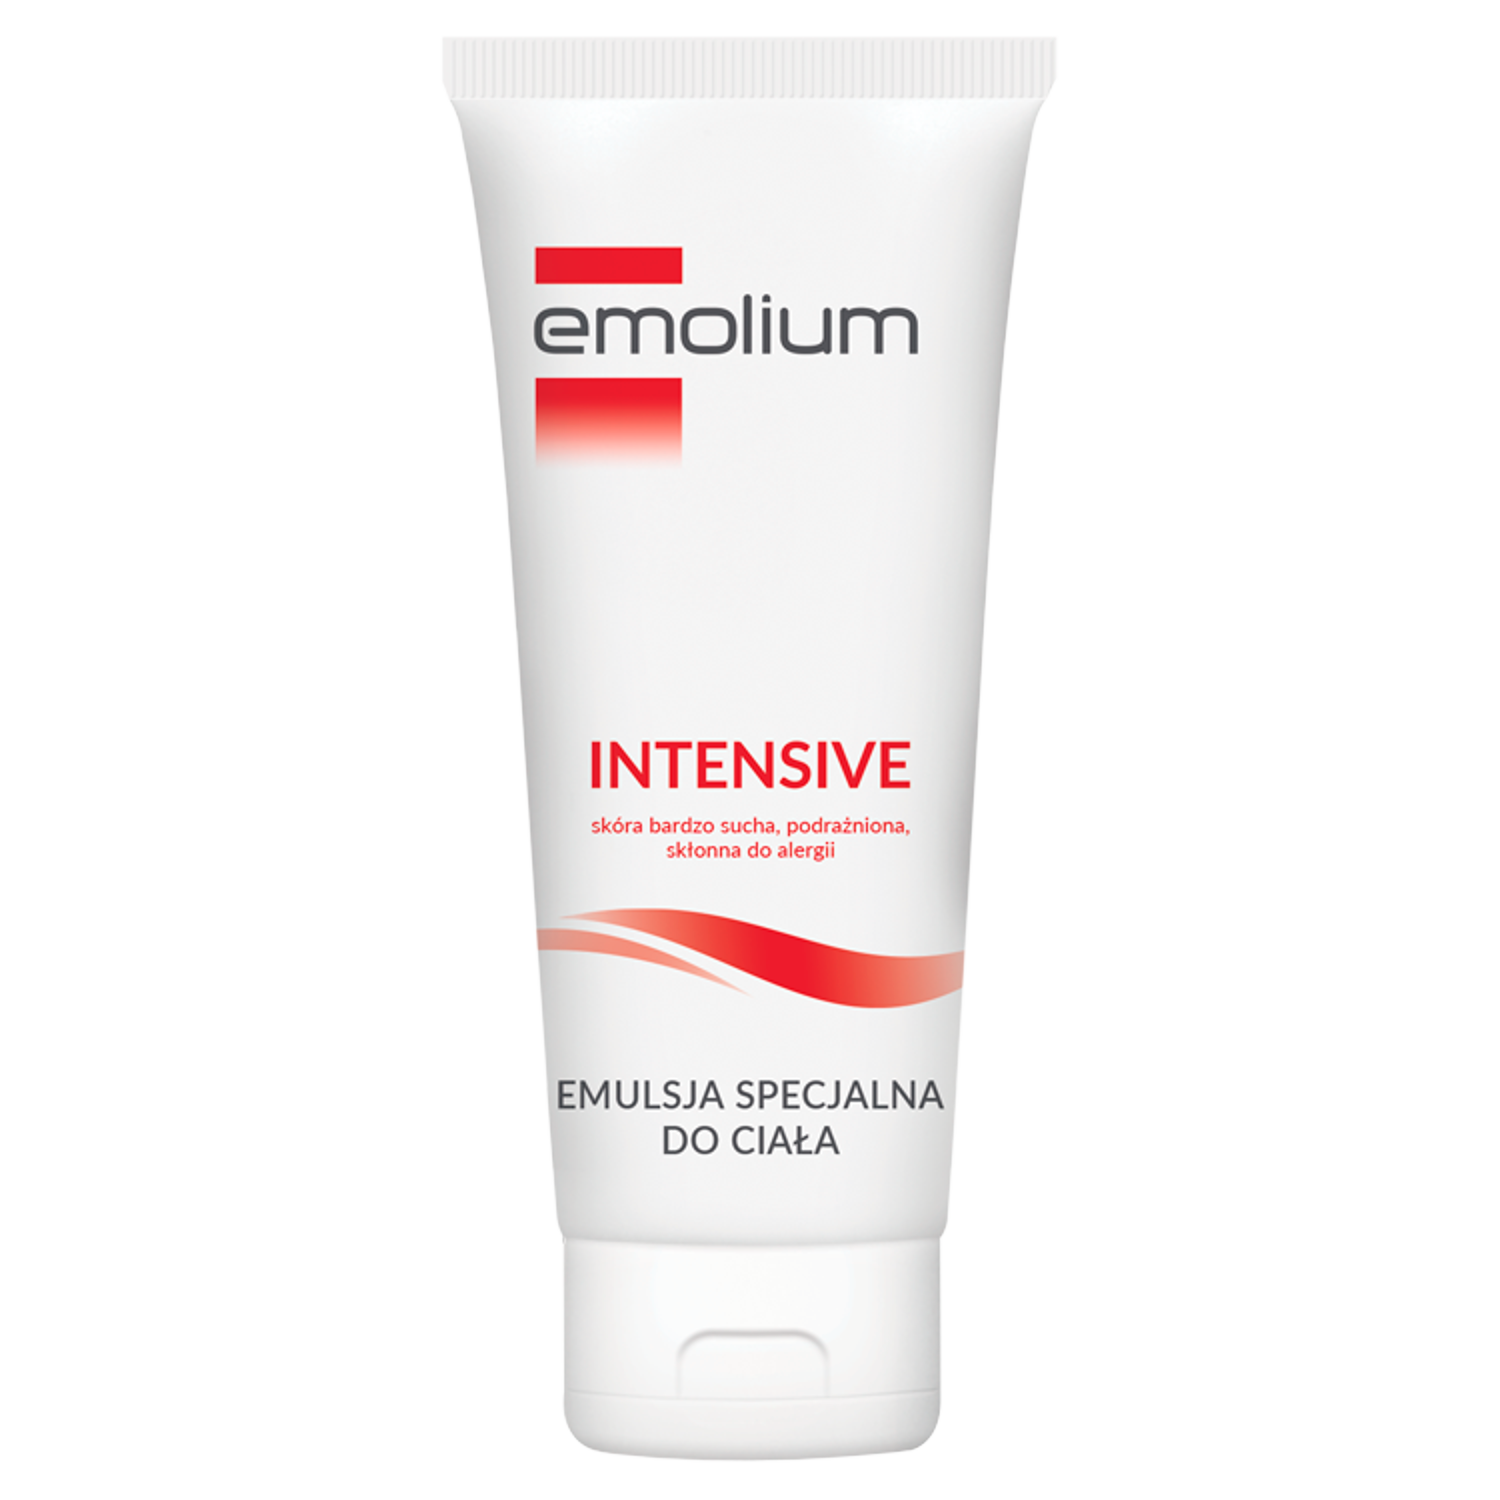 Emolium Intensive специальная эмульсия для тела, 200 мл